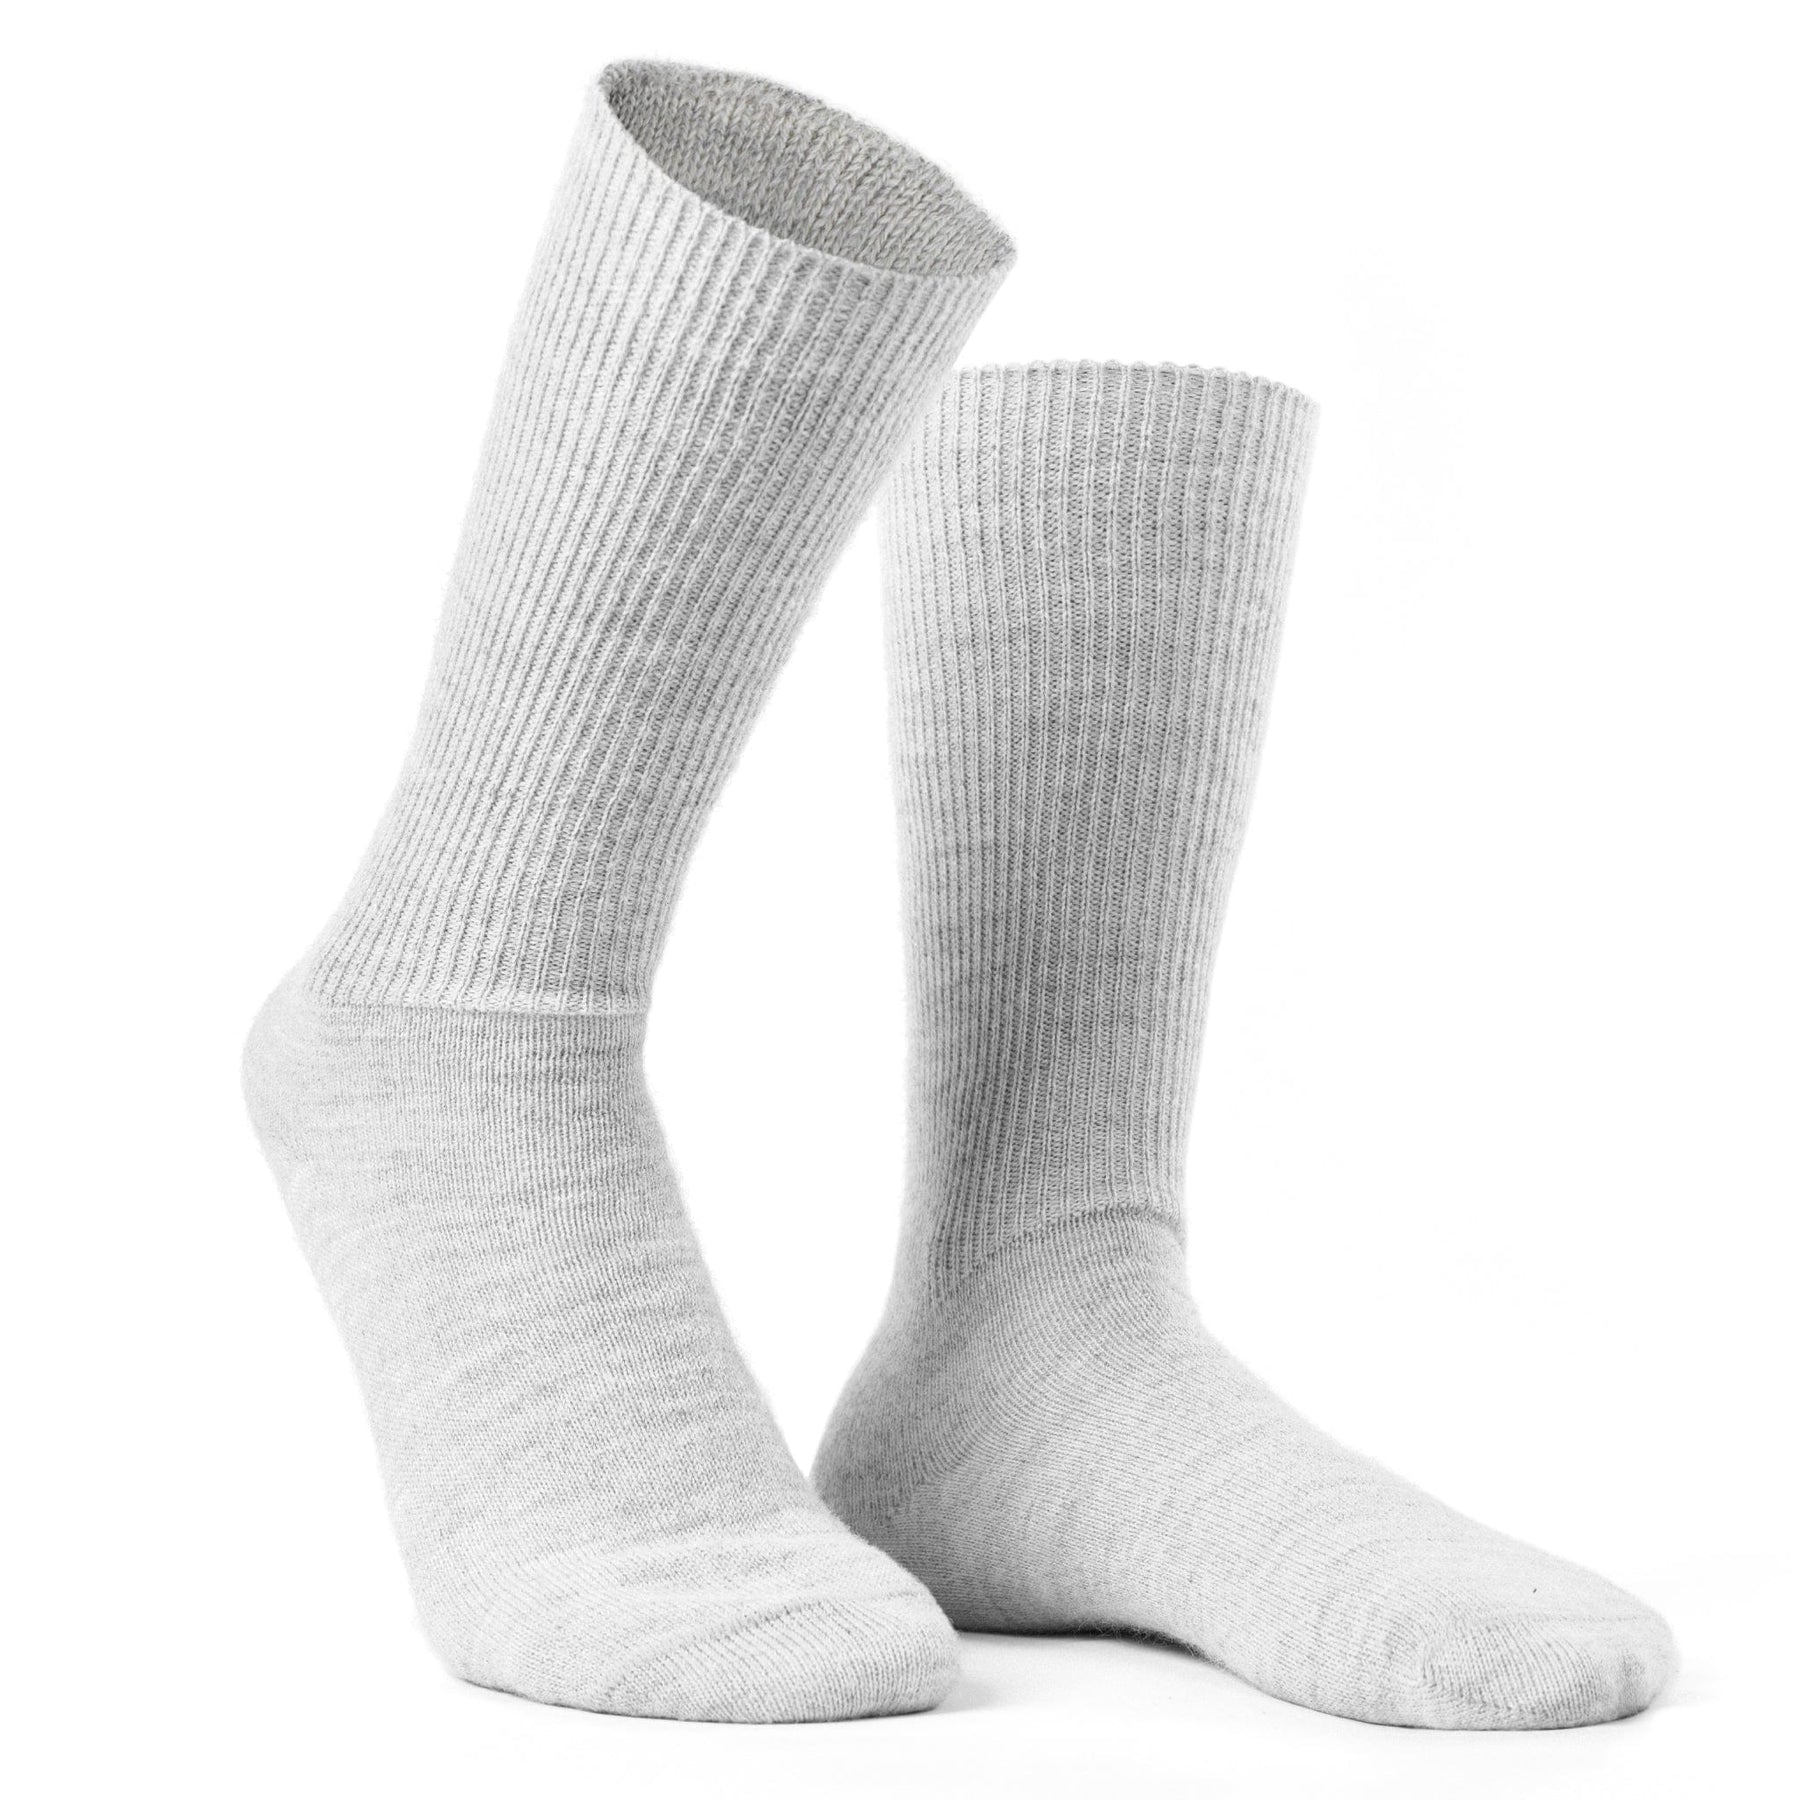 Paire de chaussettes thermiques homme (41-44) blanc